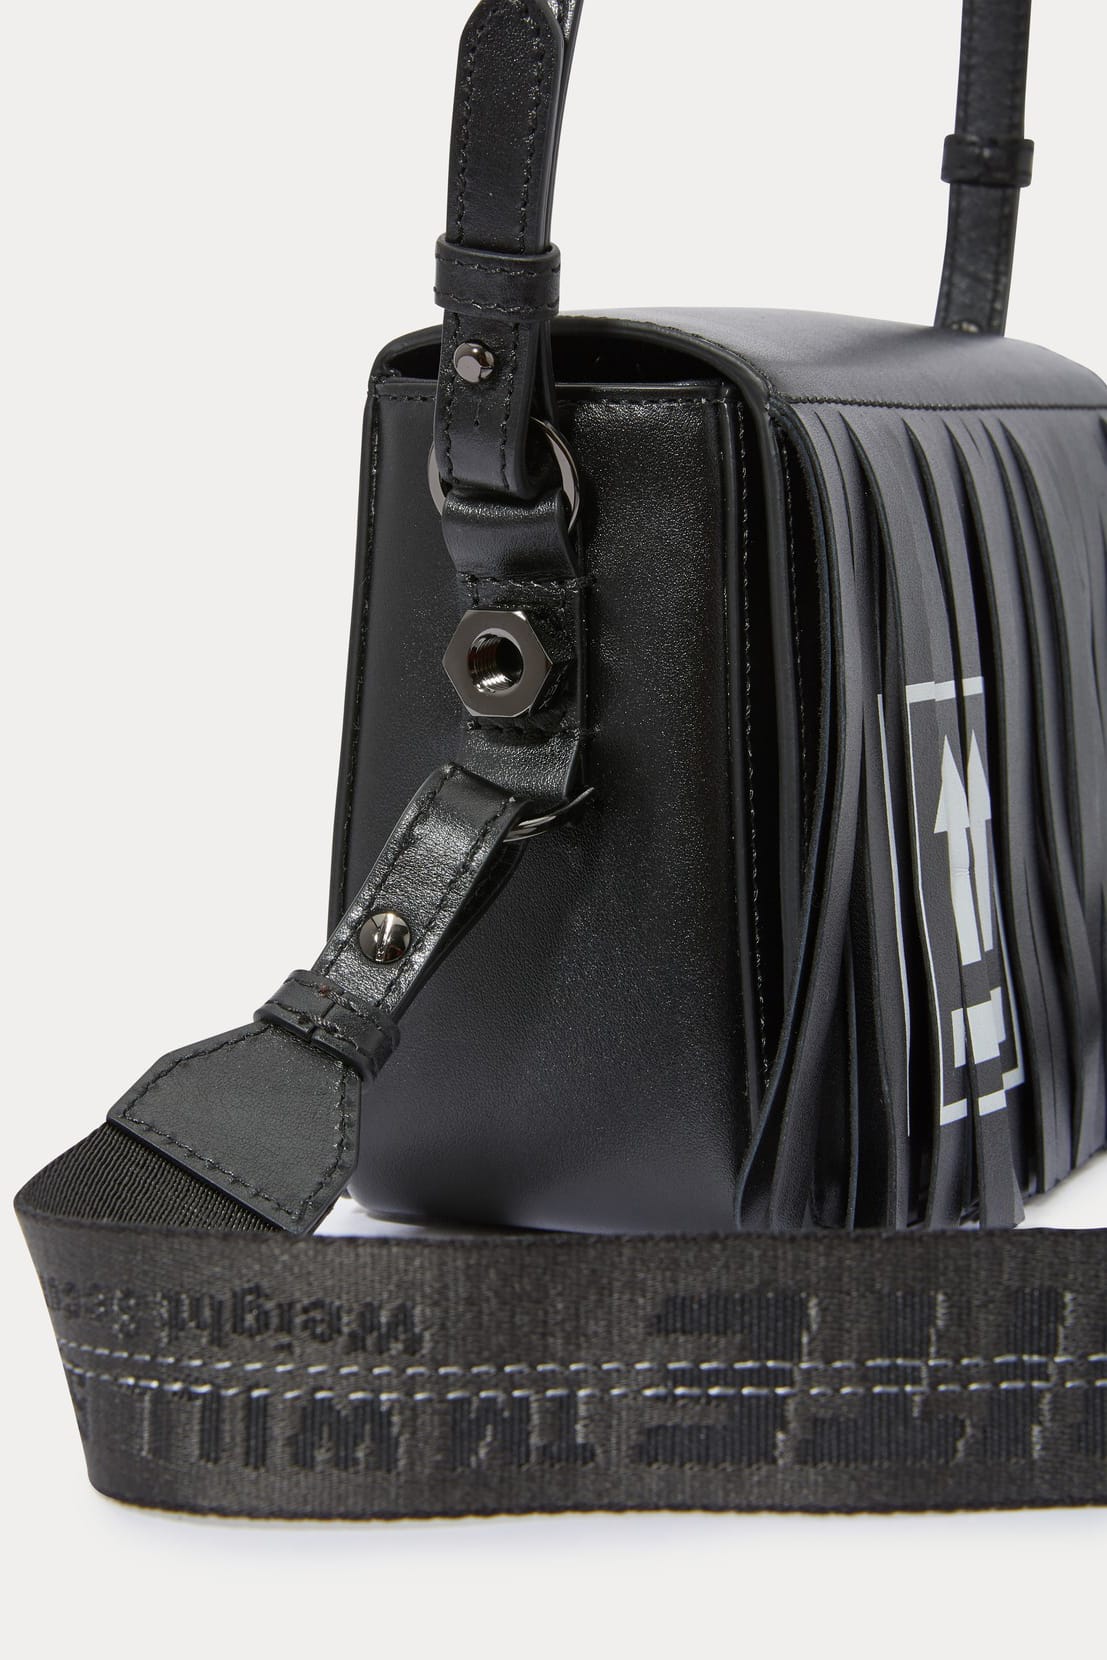 OFF-WHITE - Binder Small Leather Shoulder Bag